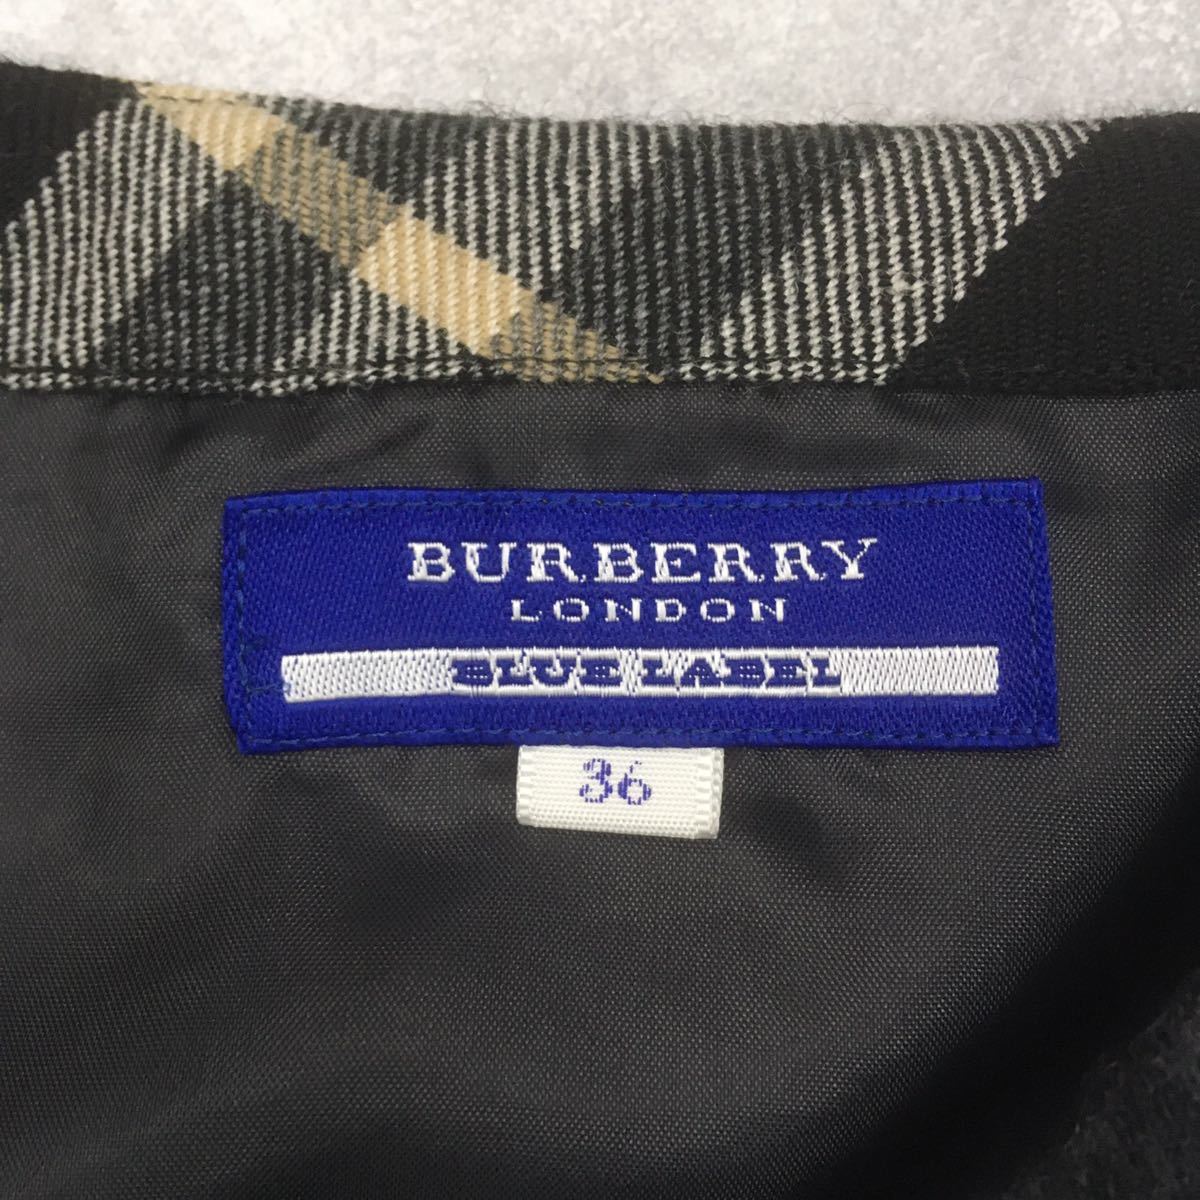 BURBERRY LONDON BLUE LABEL バーバリー ロンドン ブルーレーベル 巻きスカート 三陽商会 サイズ36 グレー